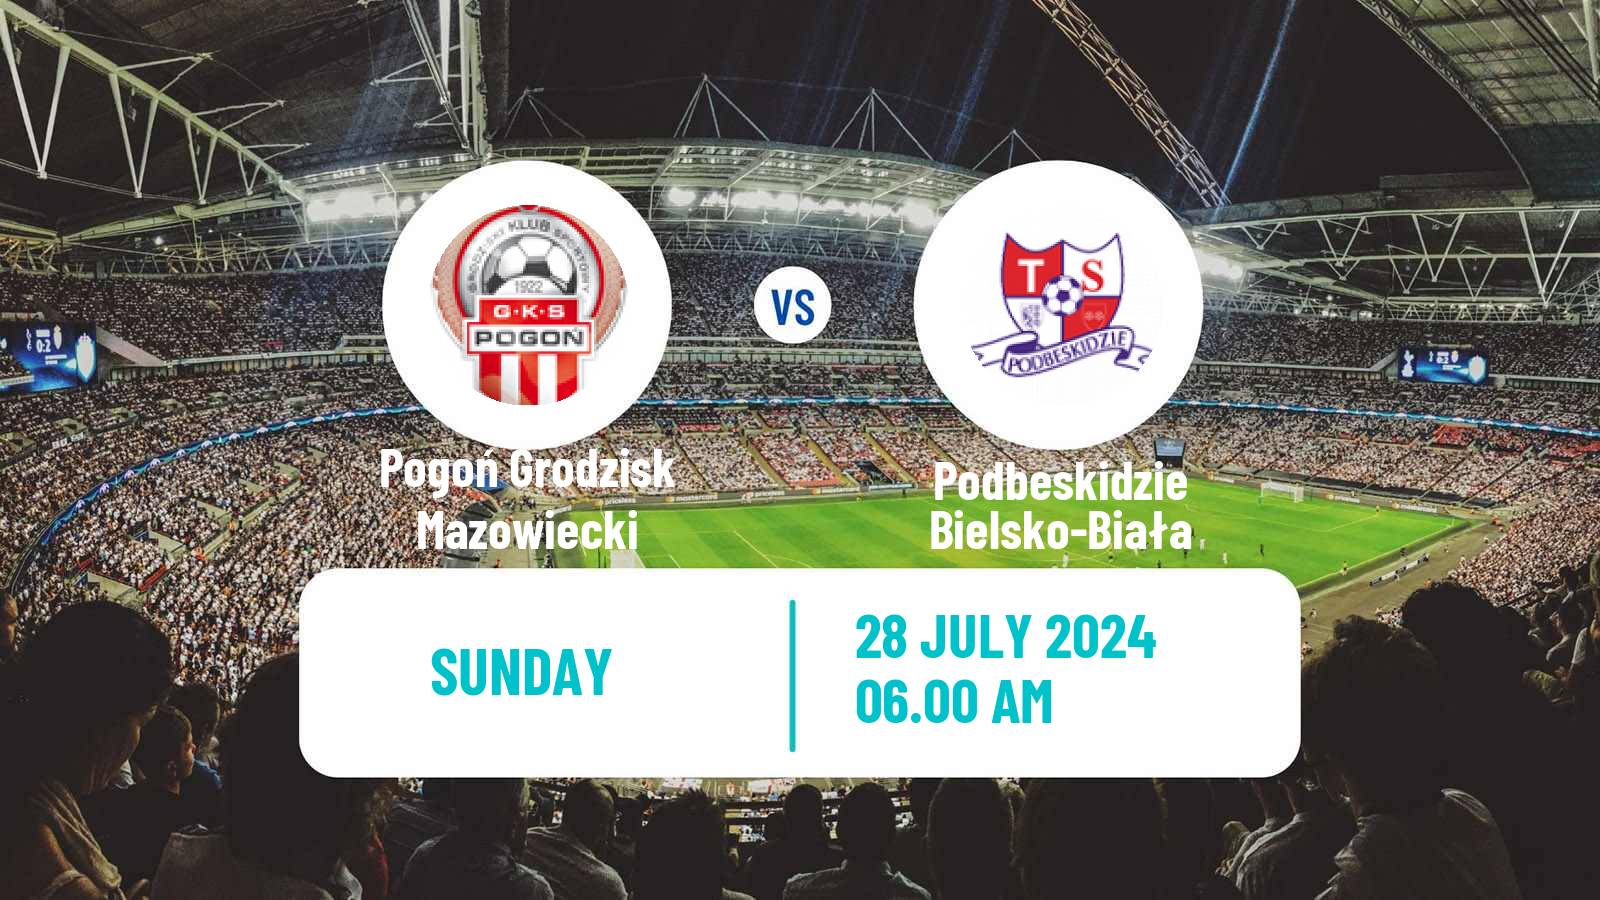 Soccer Polish Division 2 Pogoń Grodzisk Mazowiecki - Podbeskidzie Bielsko-Biała